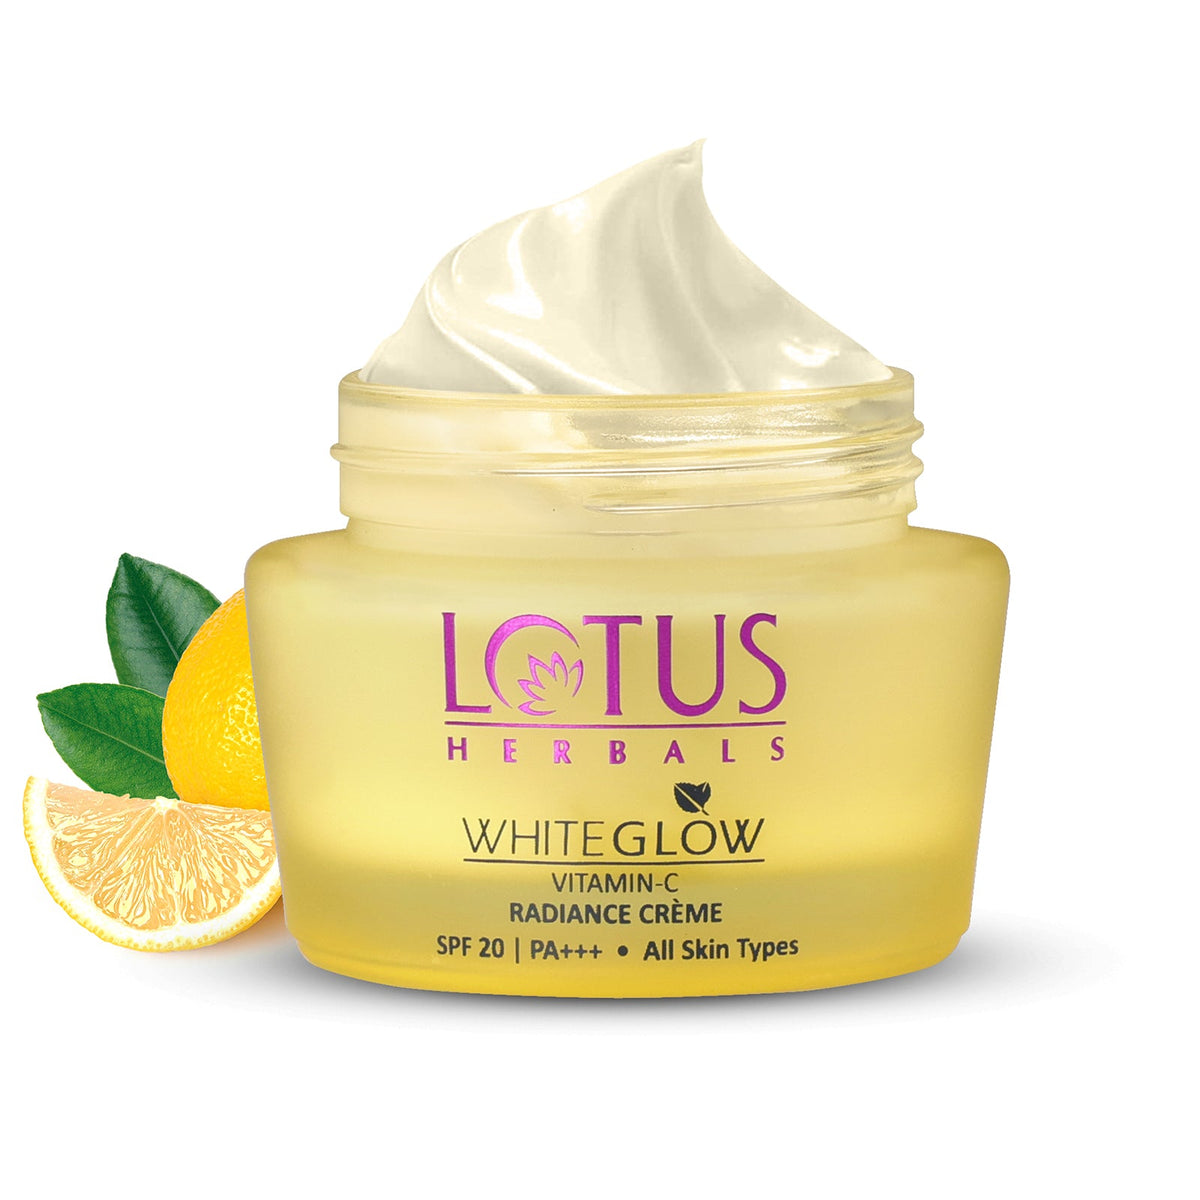 Lotus Herbals WhiteGlow Vitamin-C Radiance Creme SPF 20 I PA+++ (50 g) Lotus Herbals